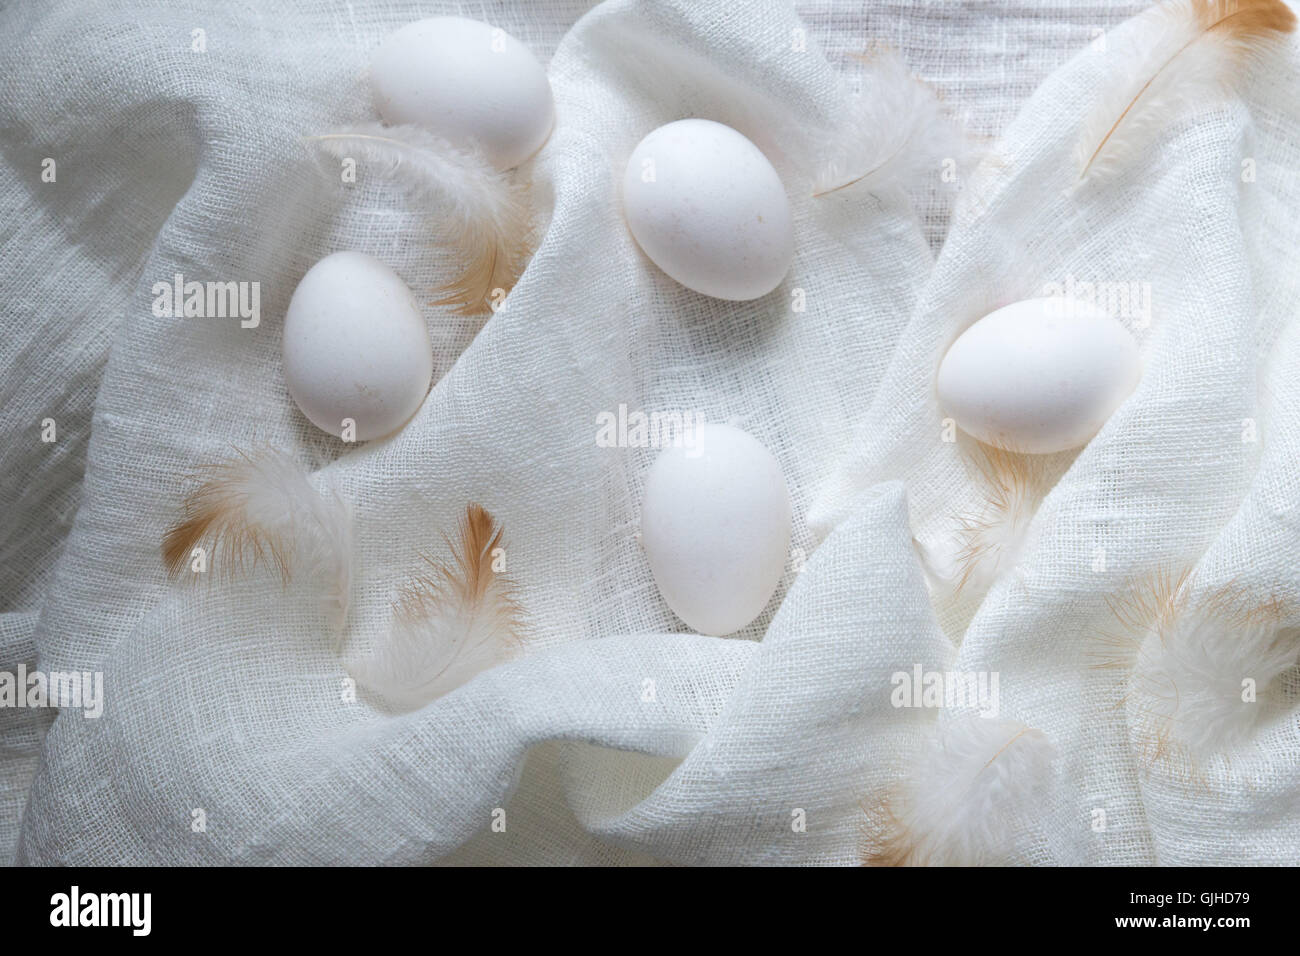 Les œufs et les plumes de tissu de mousseline blanche Banque D'Images